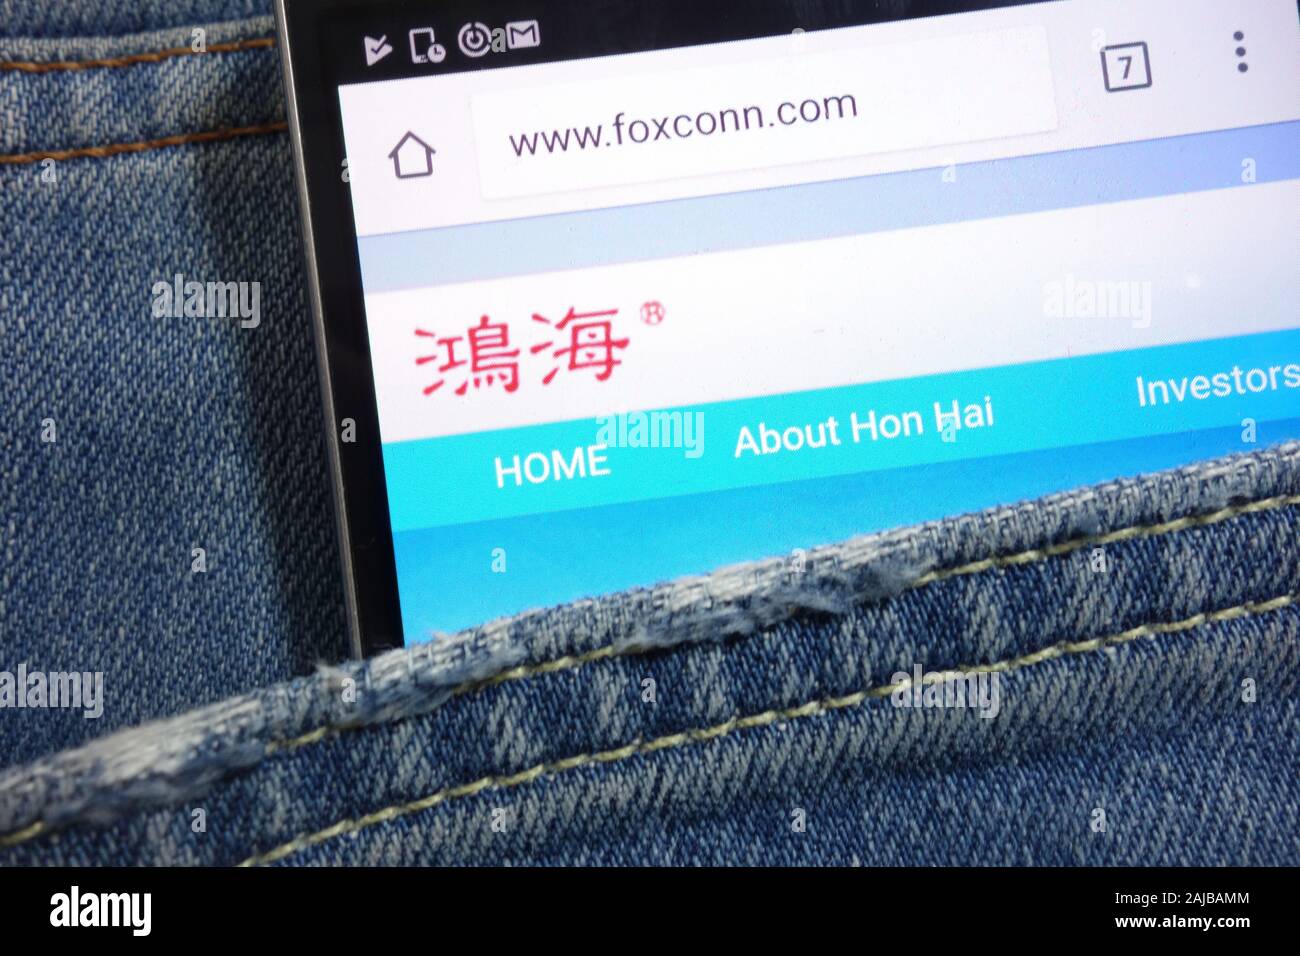 Affiché sur le site de Foxconn en poches cachées smartphone Banque D'Images